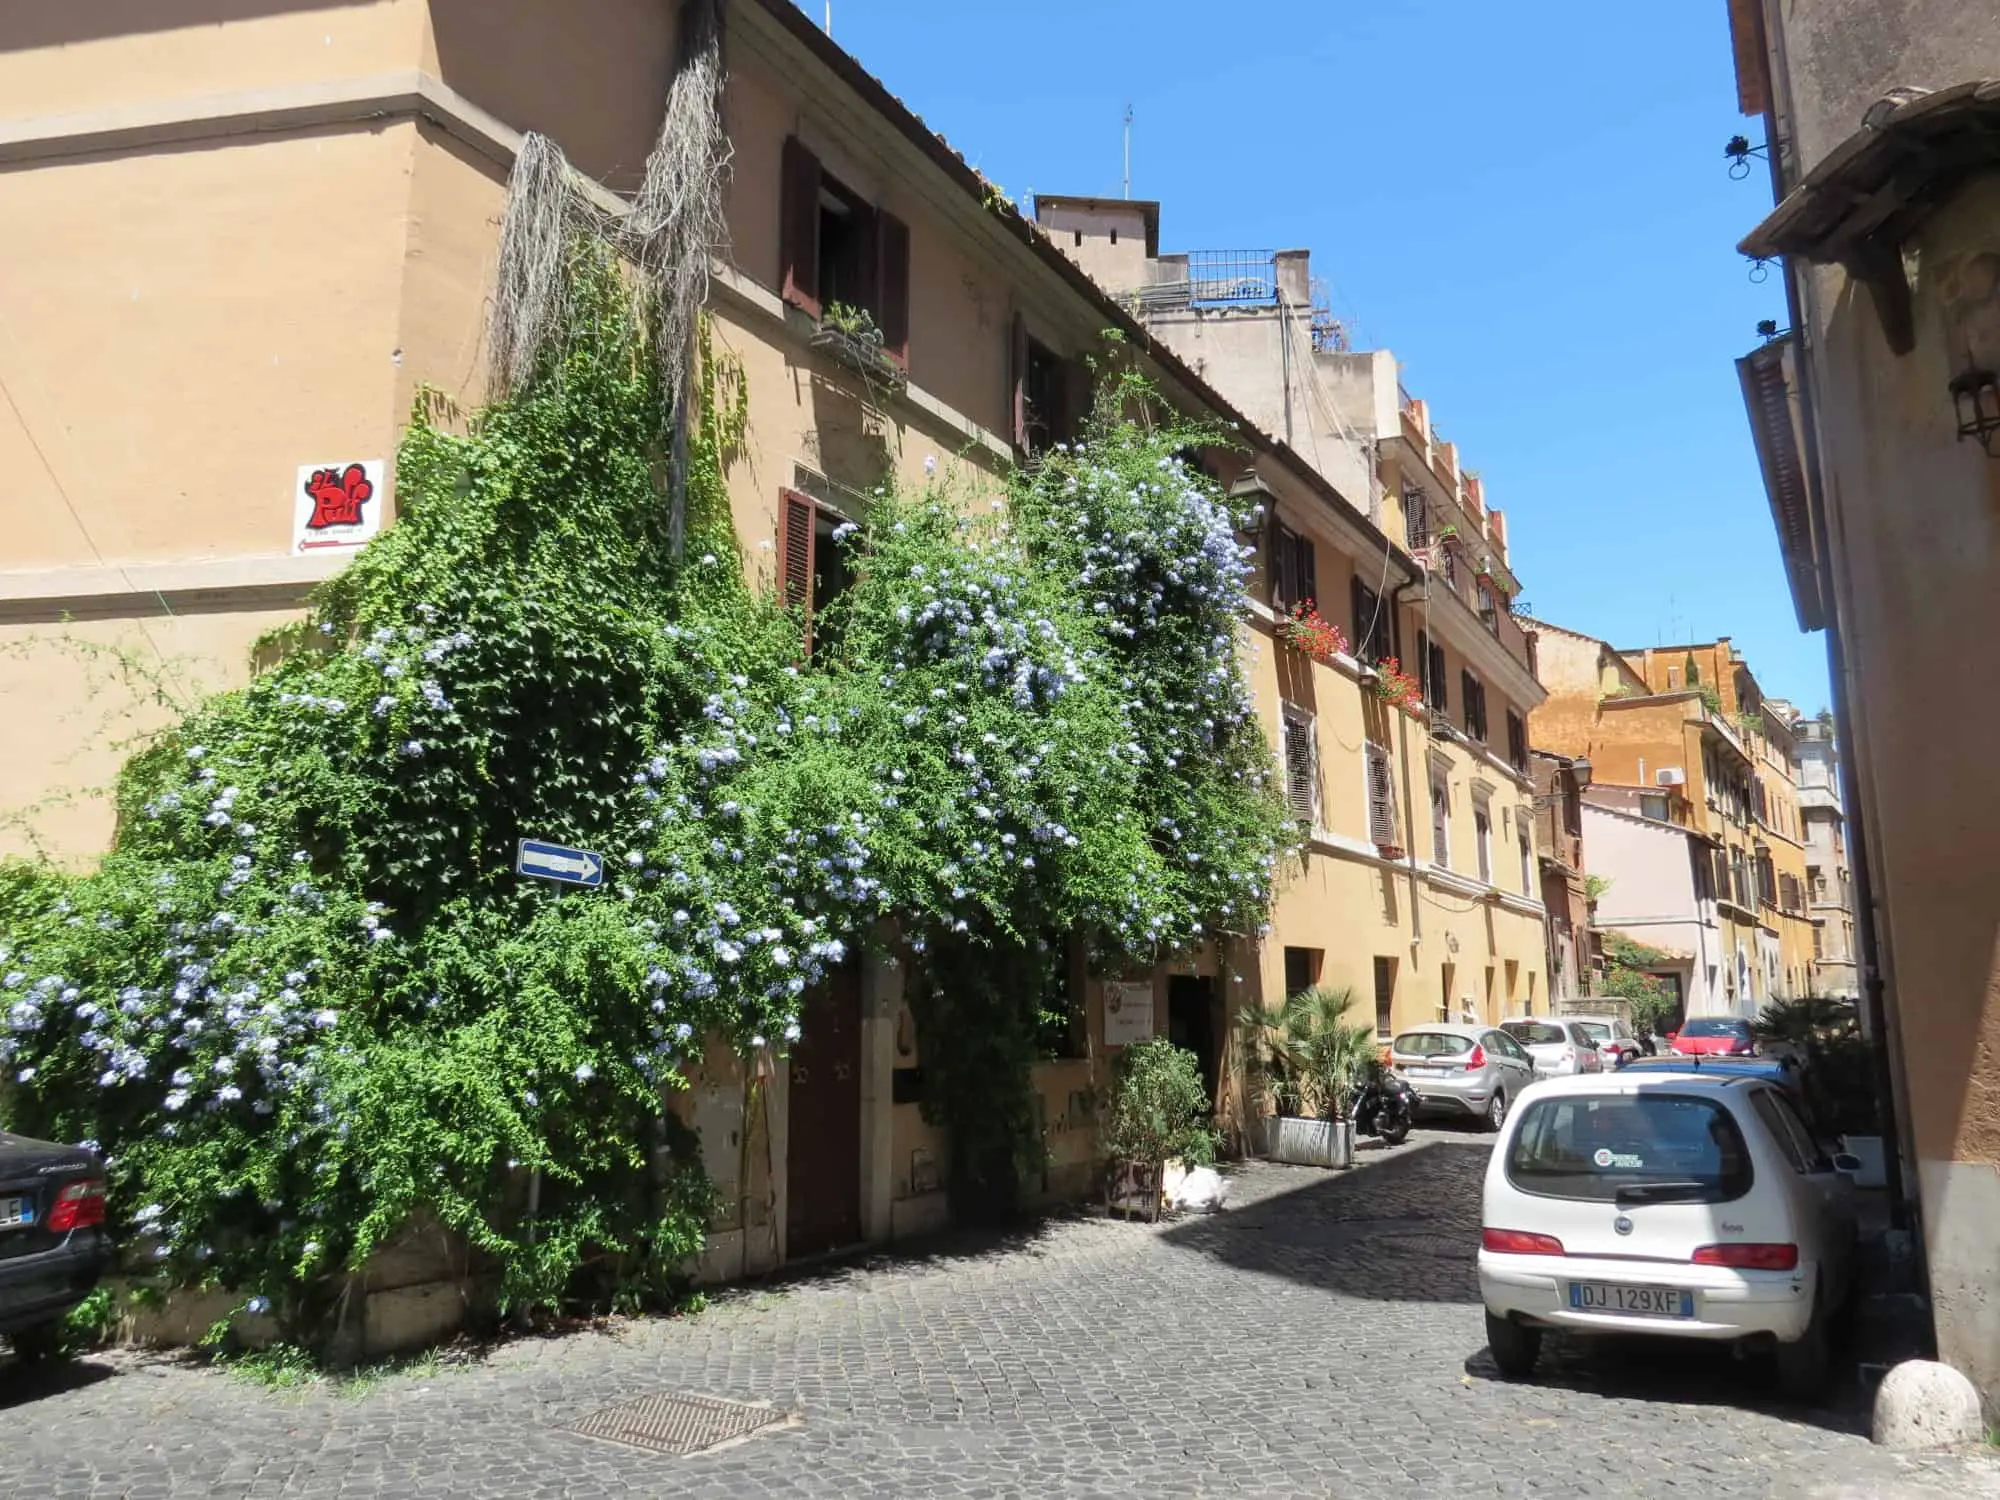 Cobbled streets of Trastevere, Rome